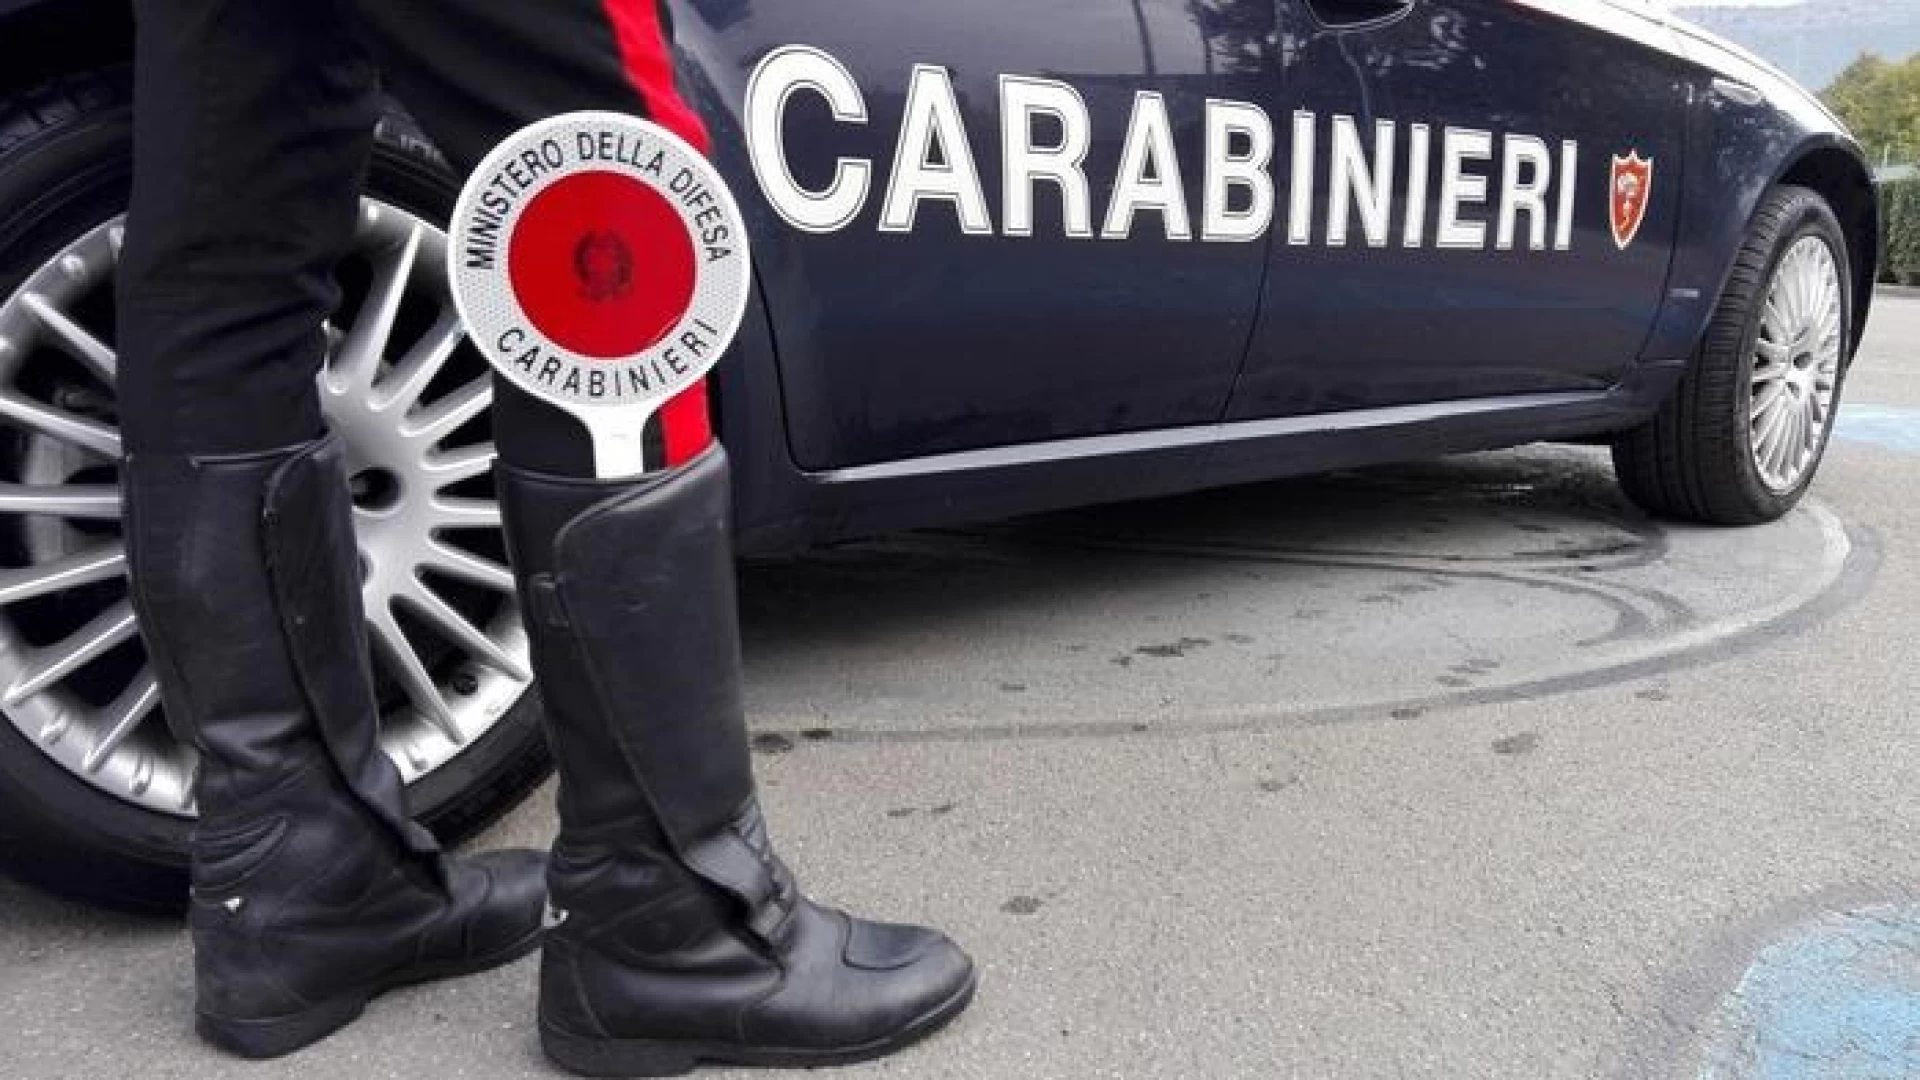 Isernia: i Carabinieri beccano ladri di autovetture. Continua l’opera di contrasto al fenomeno dei furti.